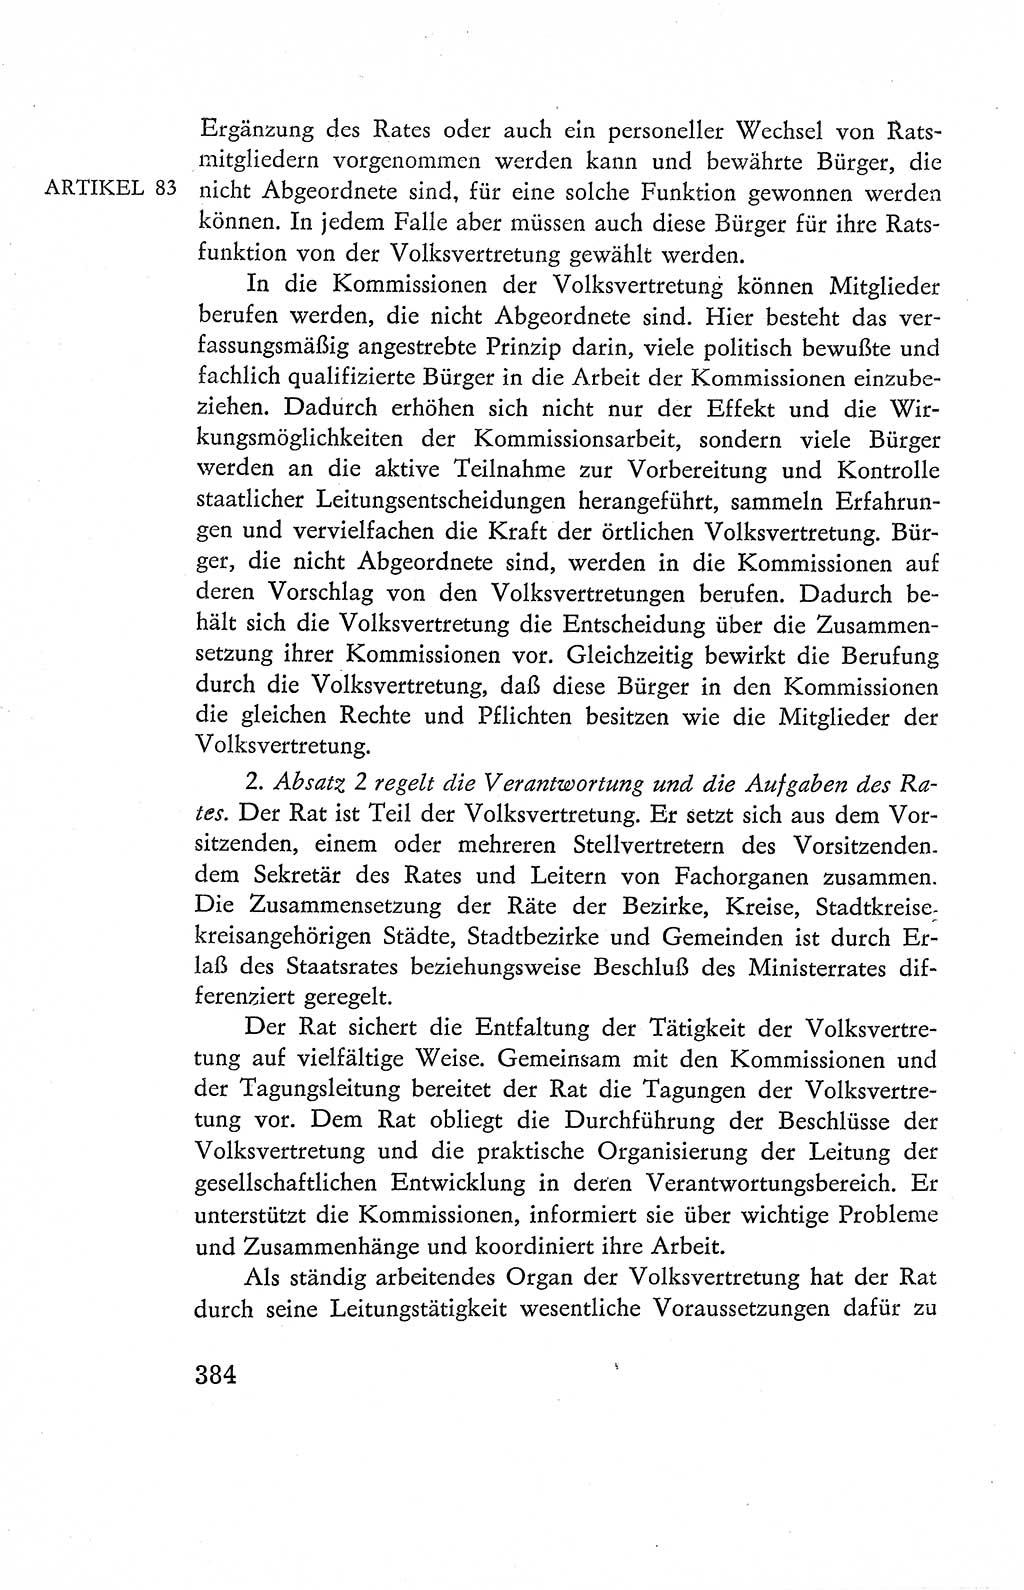 Verfassung der Deutschen Demokratischen Republik (DDR), Dokumente, Kommentar 1969, Band 2, Seite 384 (Verf. DDR Dok. Komm. 1969, Bd. 2, S. 384)